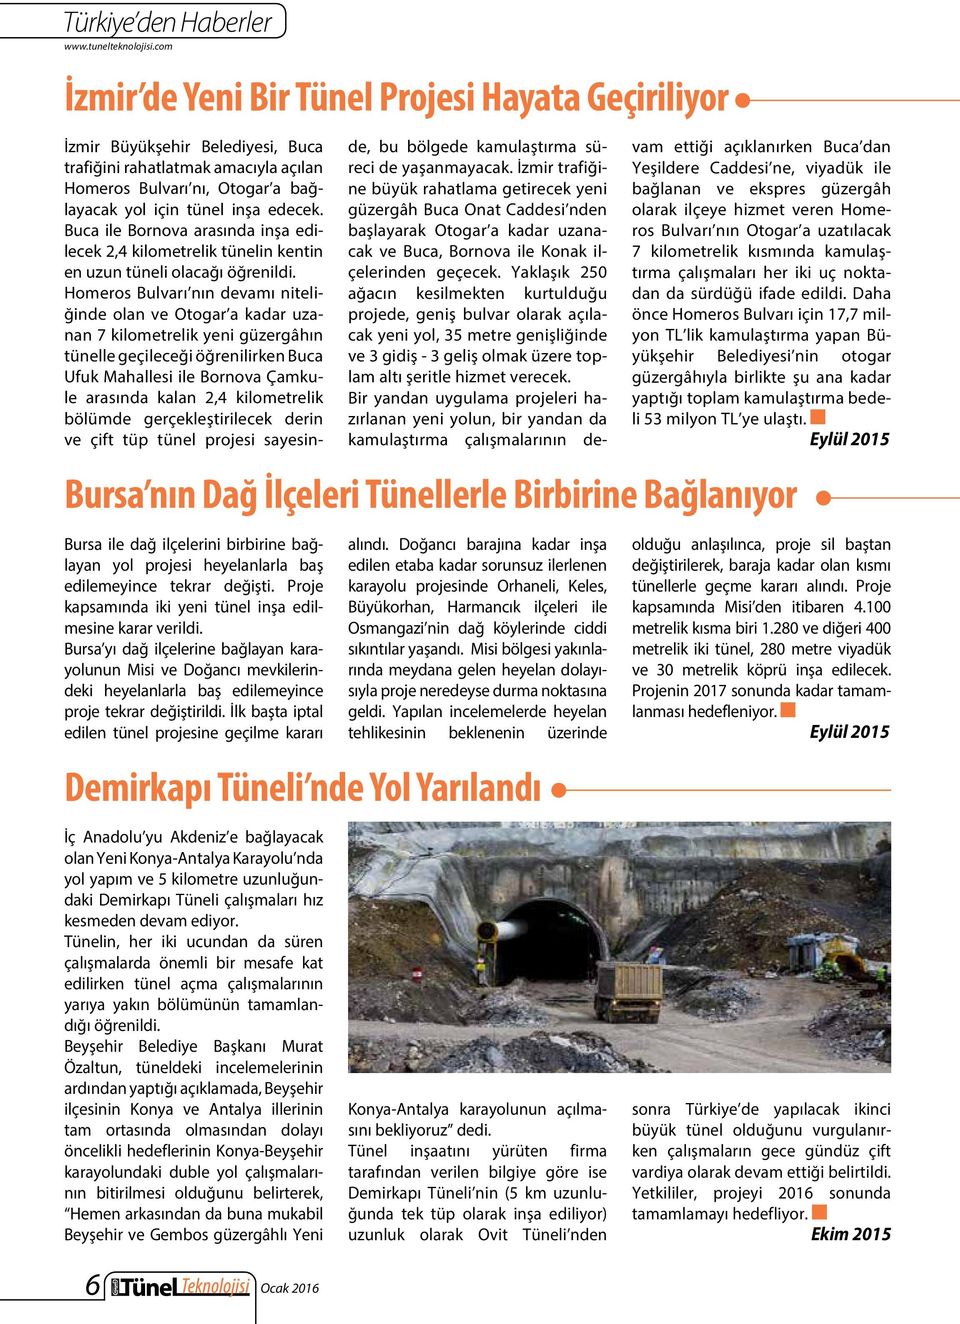 İlk başta iptal edilen tünel projesine geçilme kararı İç Anadolu yu Akdeniz e bağlayacak olan Yeni Konya-Antalya Karayolu nda yol yapım ve 5 kilometre uzunluğundaki Demirkapı Tüneli çalışmaları hız